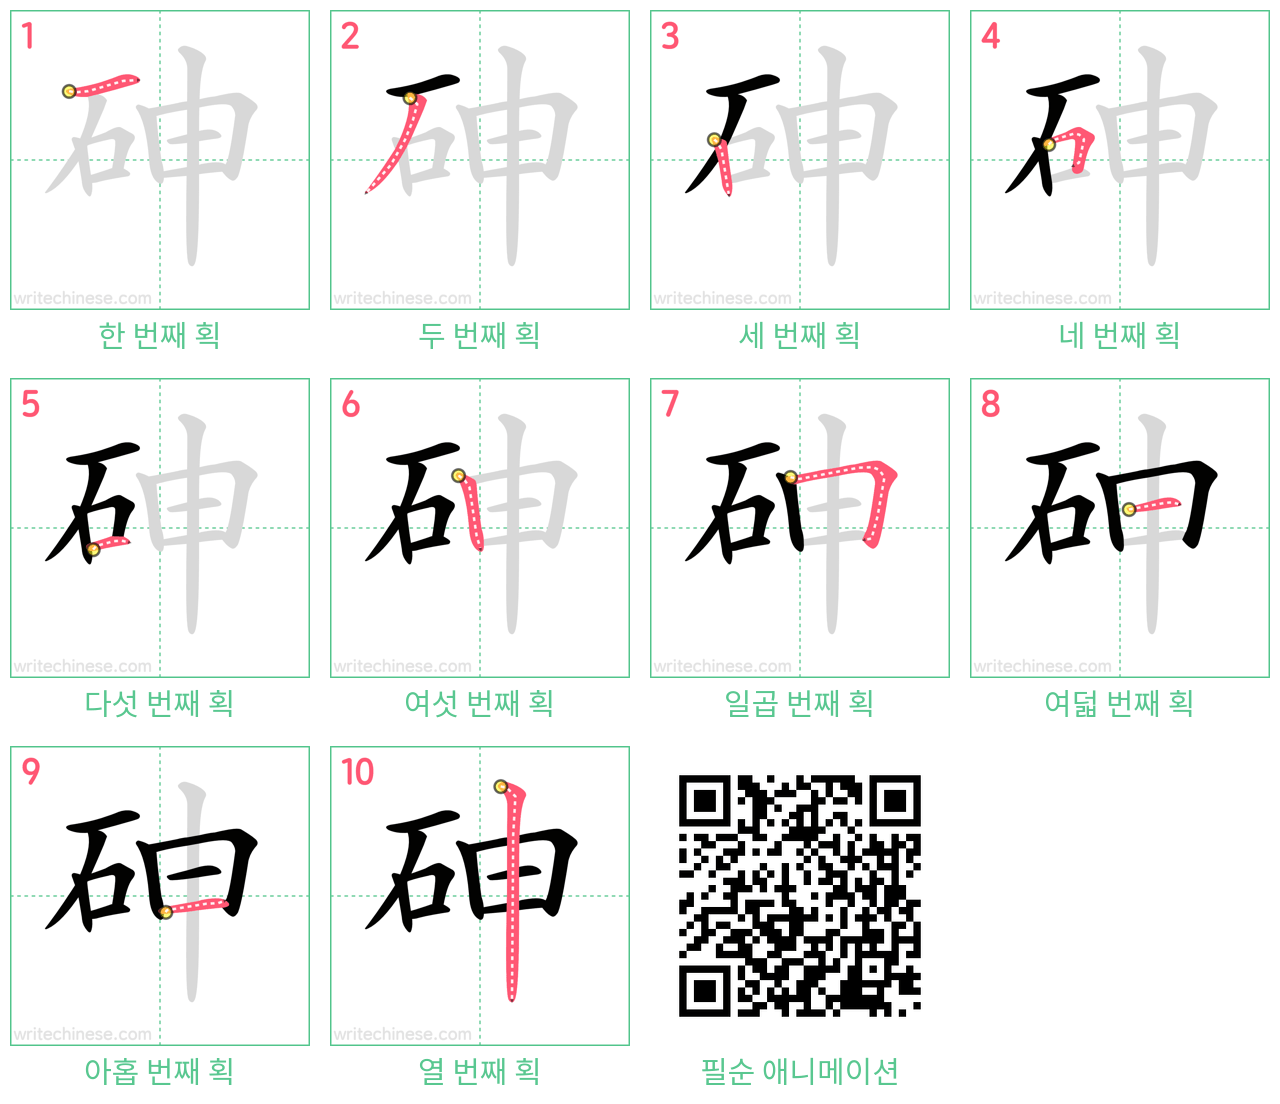 砷 step-by-step stroke order diagrams